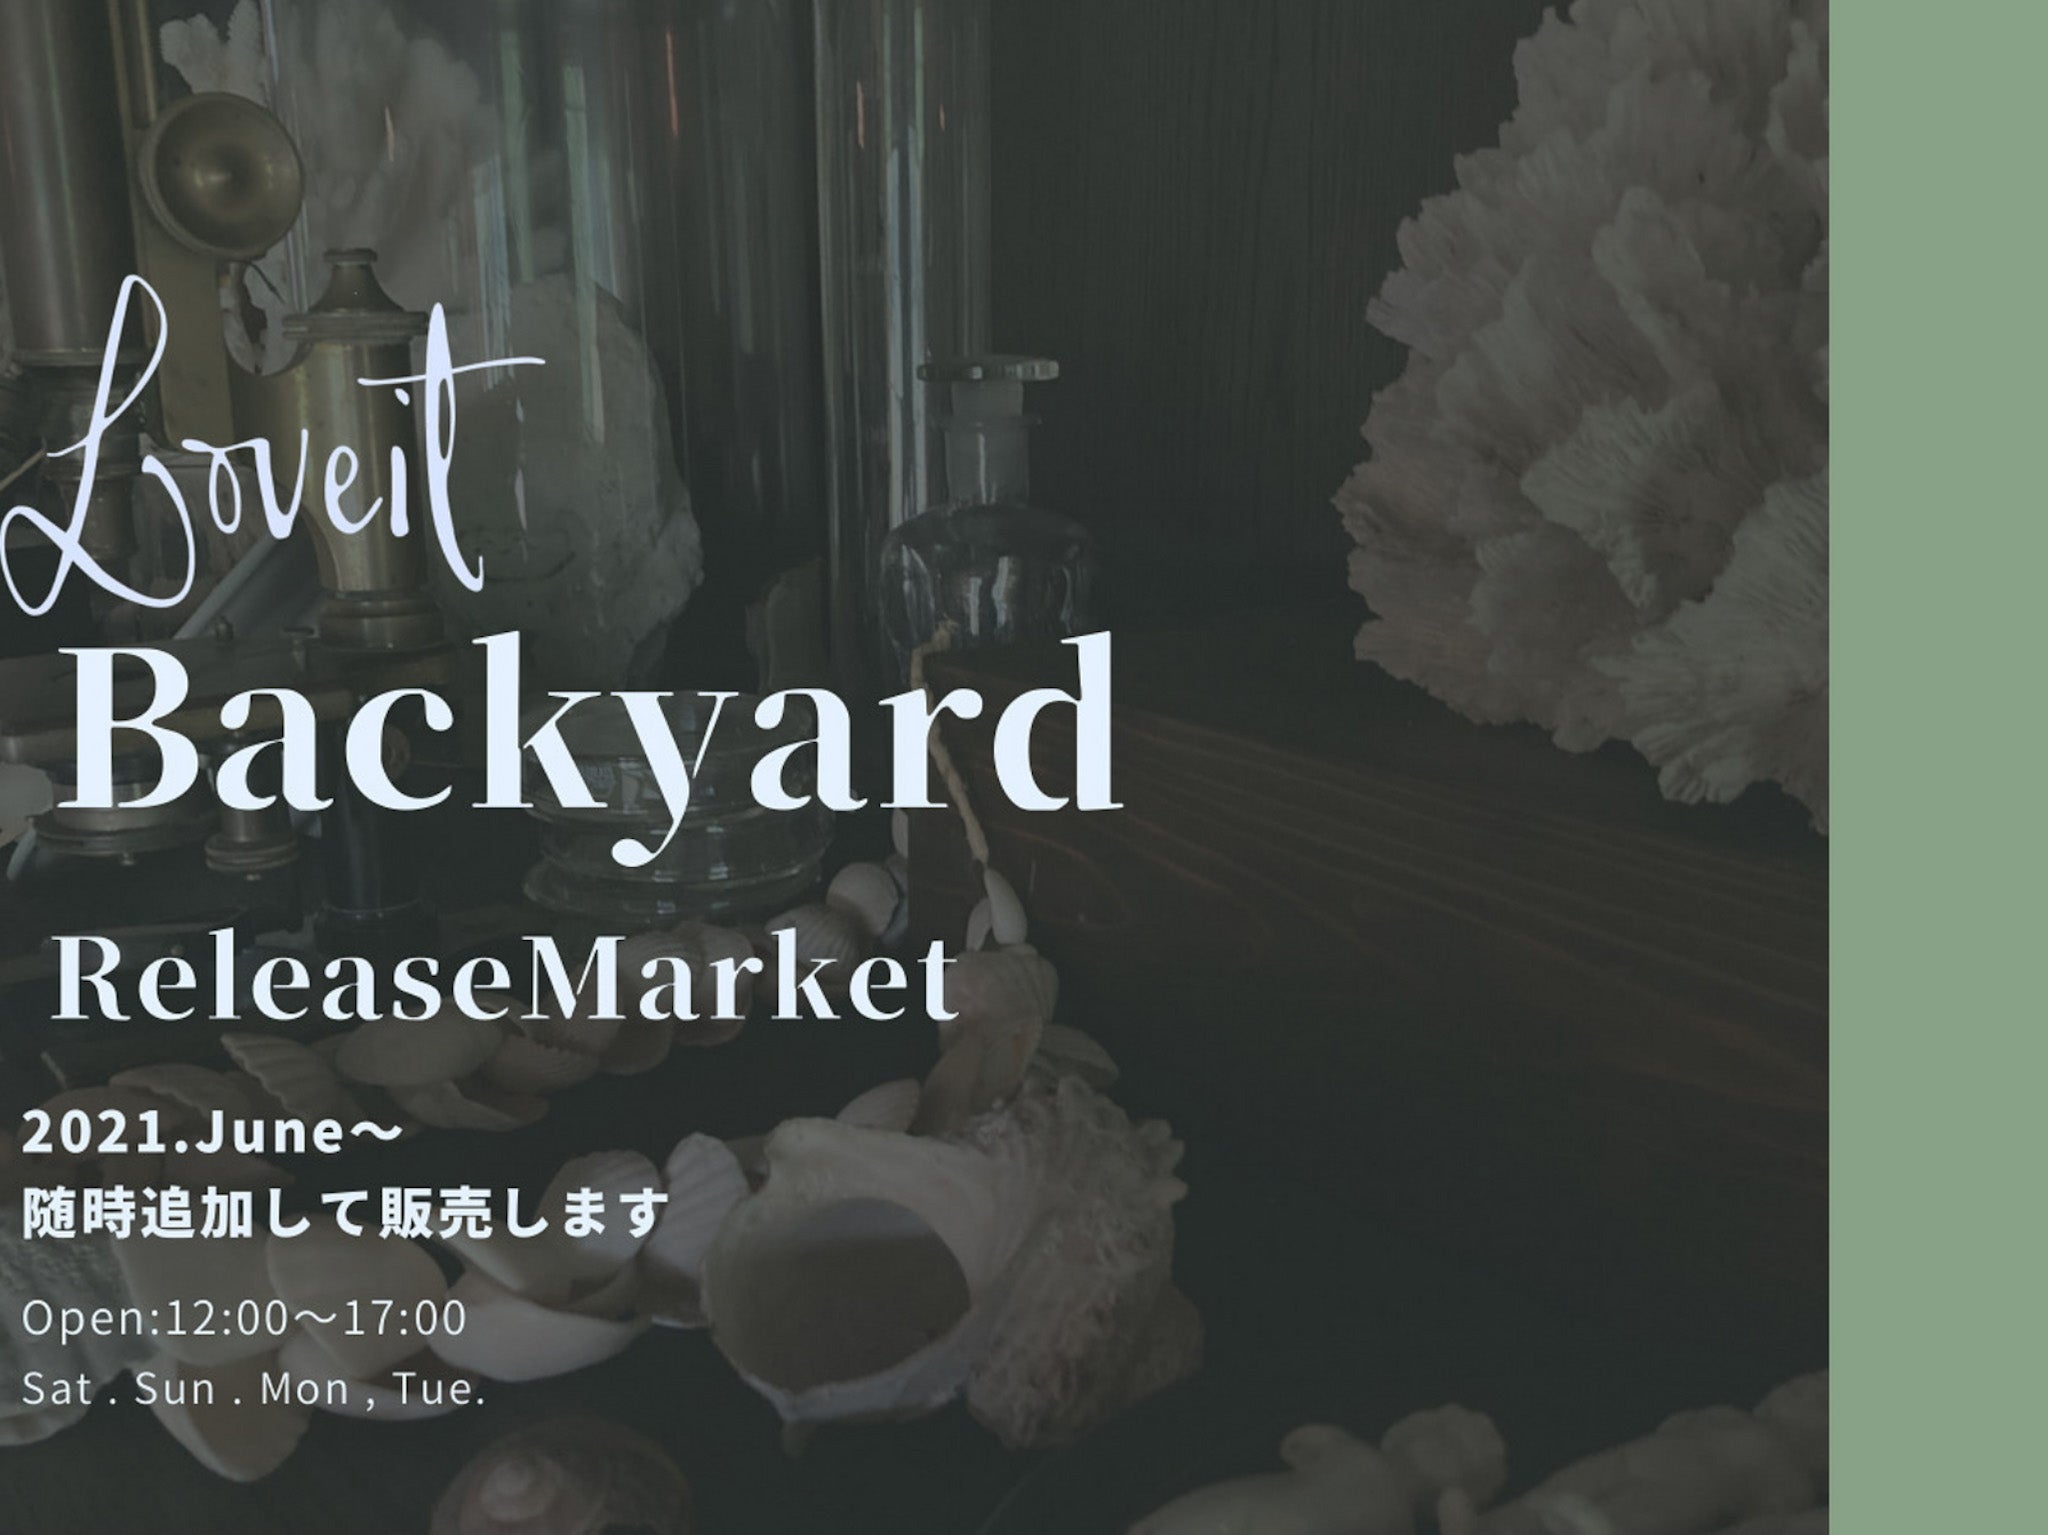 Backyard Release Market  始めます〜